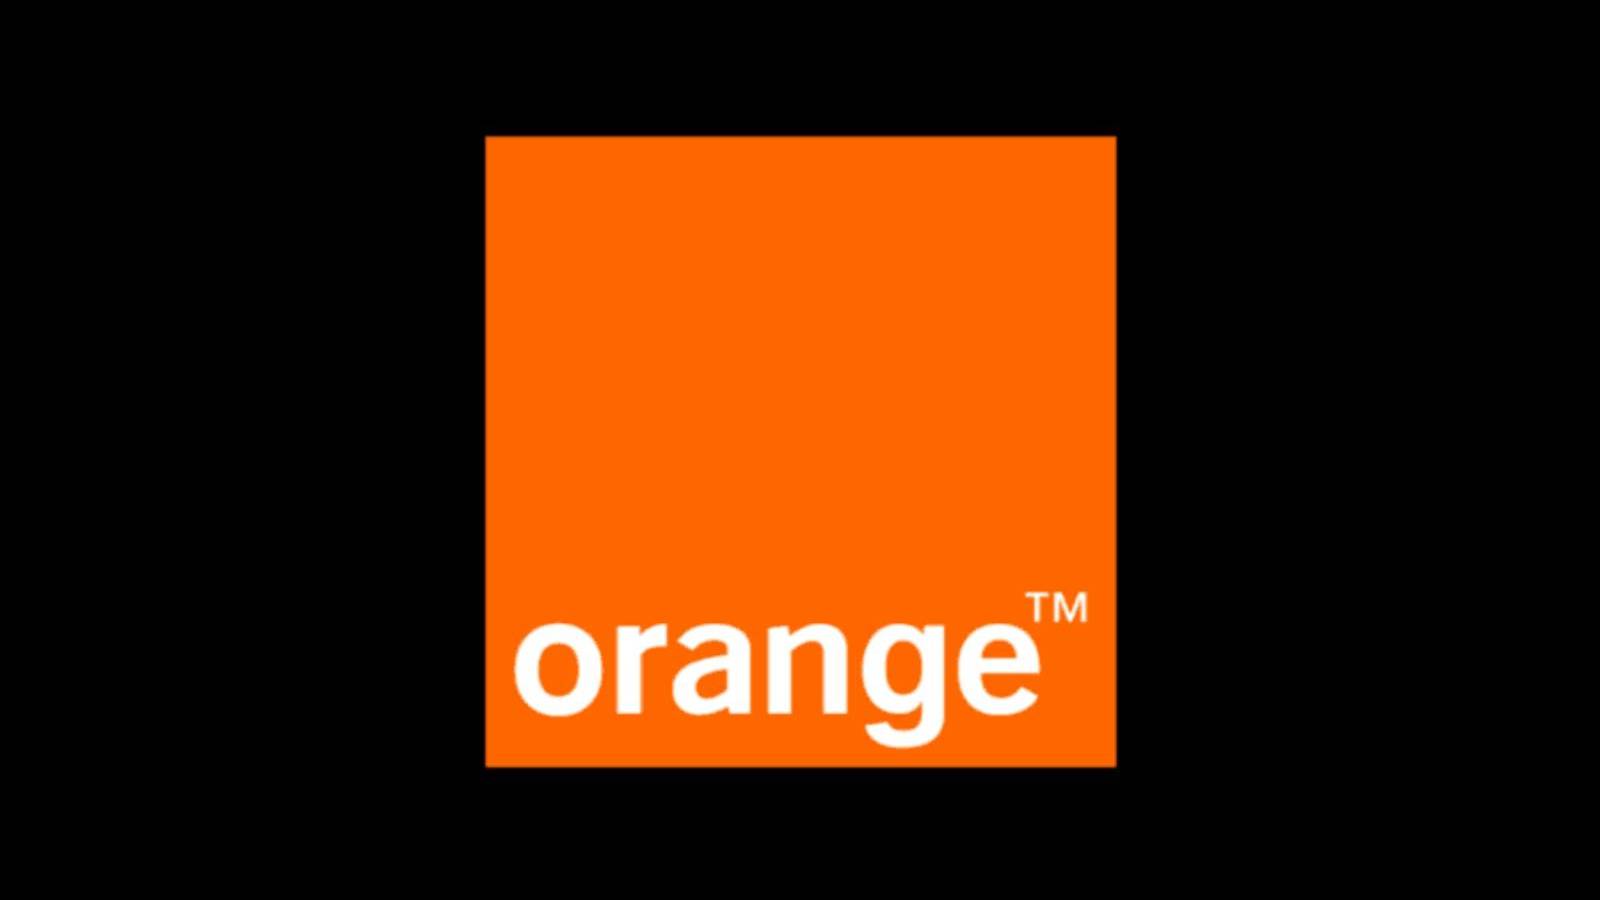 Orange tilbyder gratis penge til kunder, du skal modtage